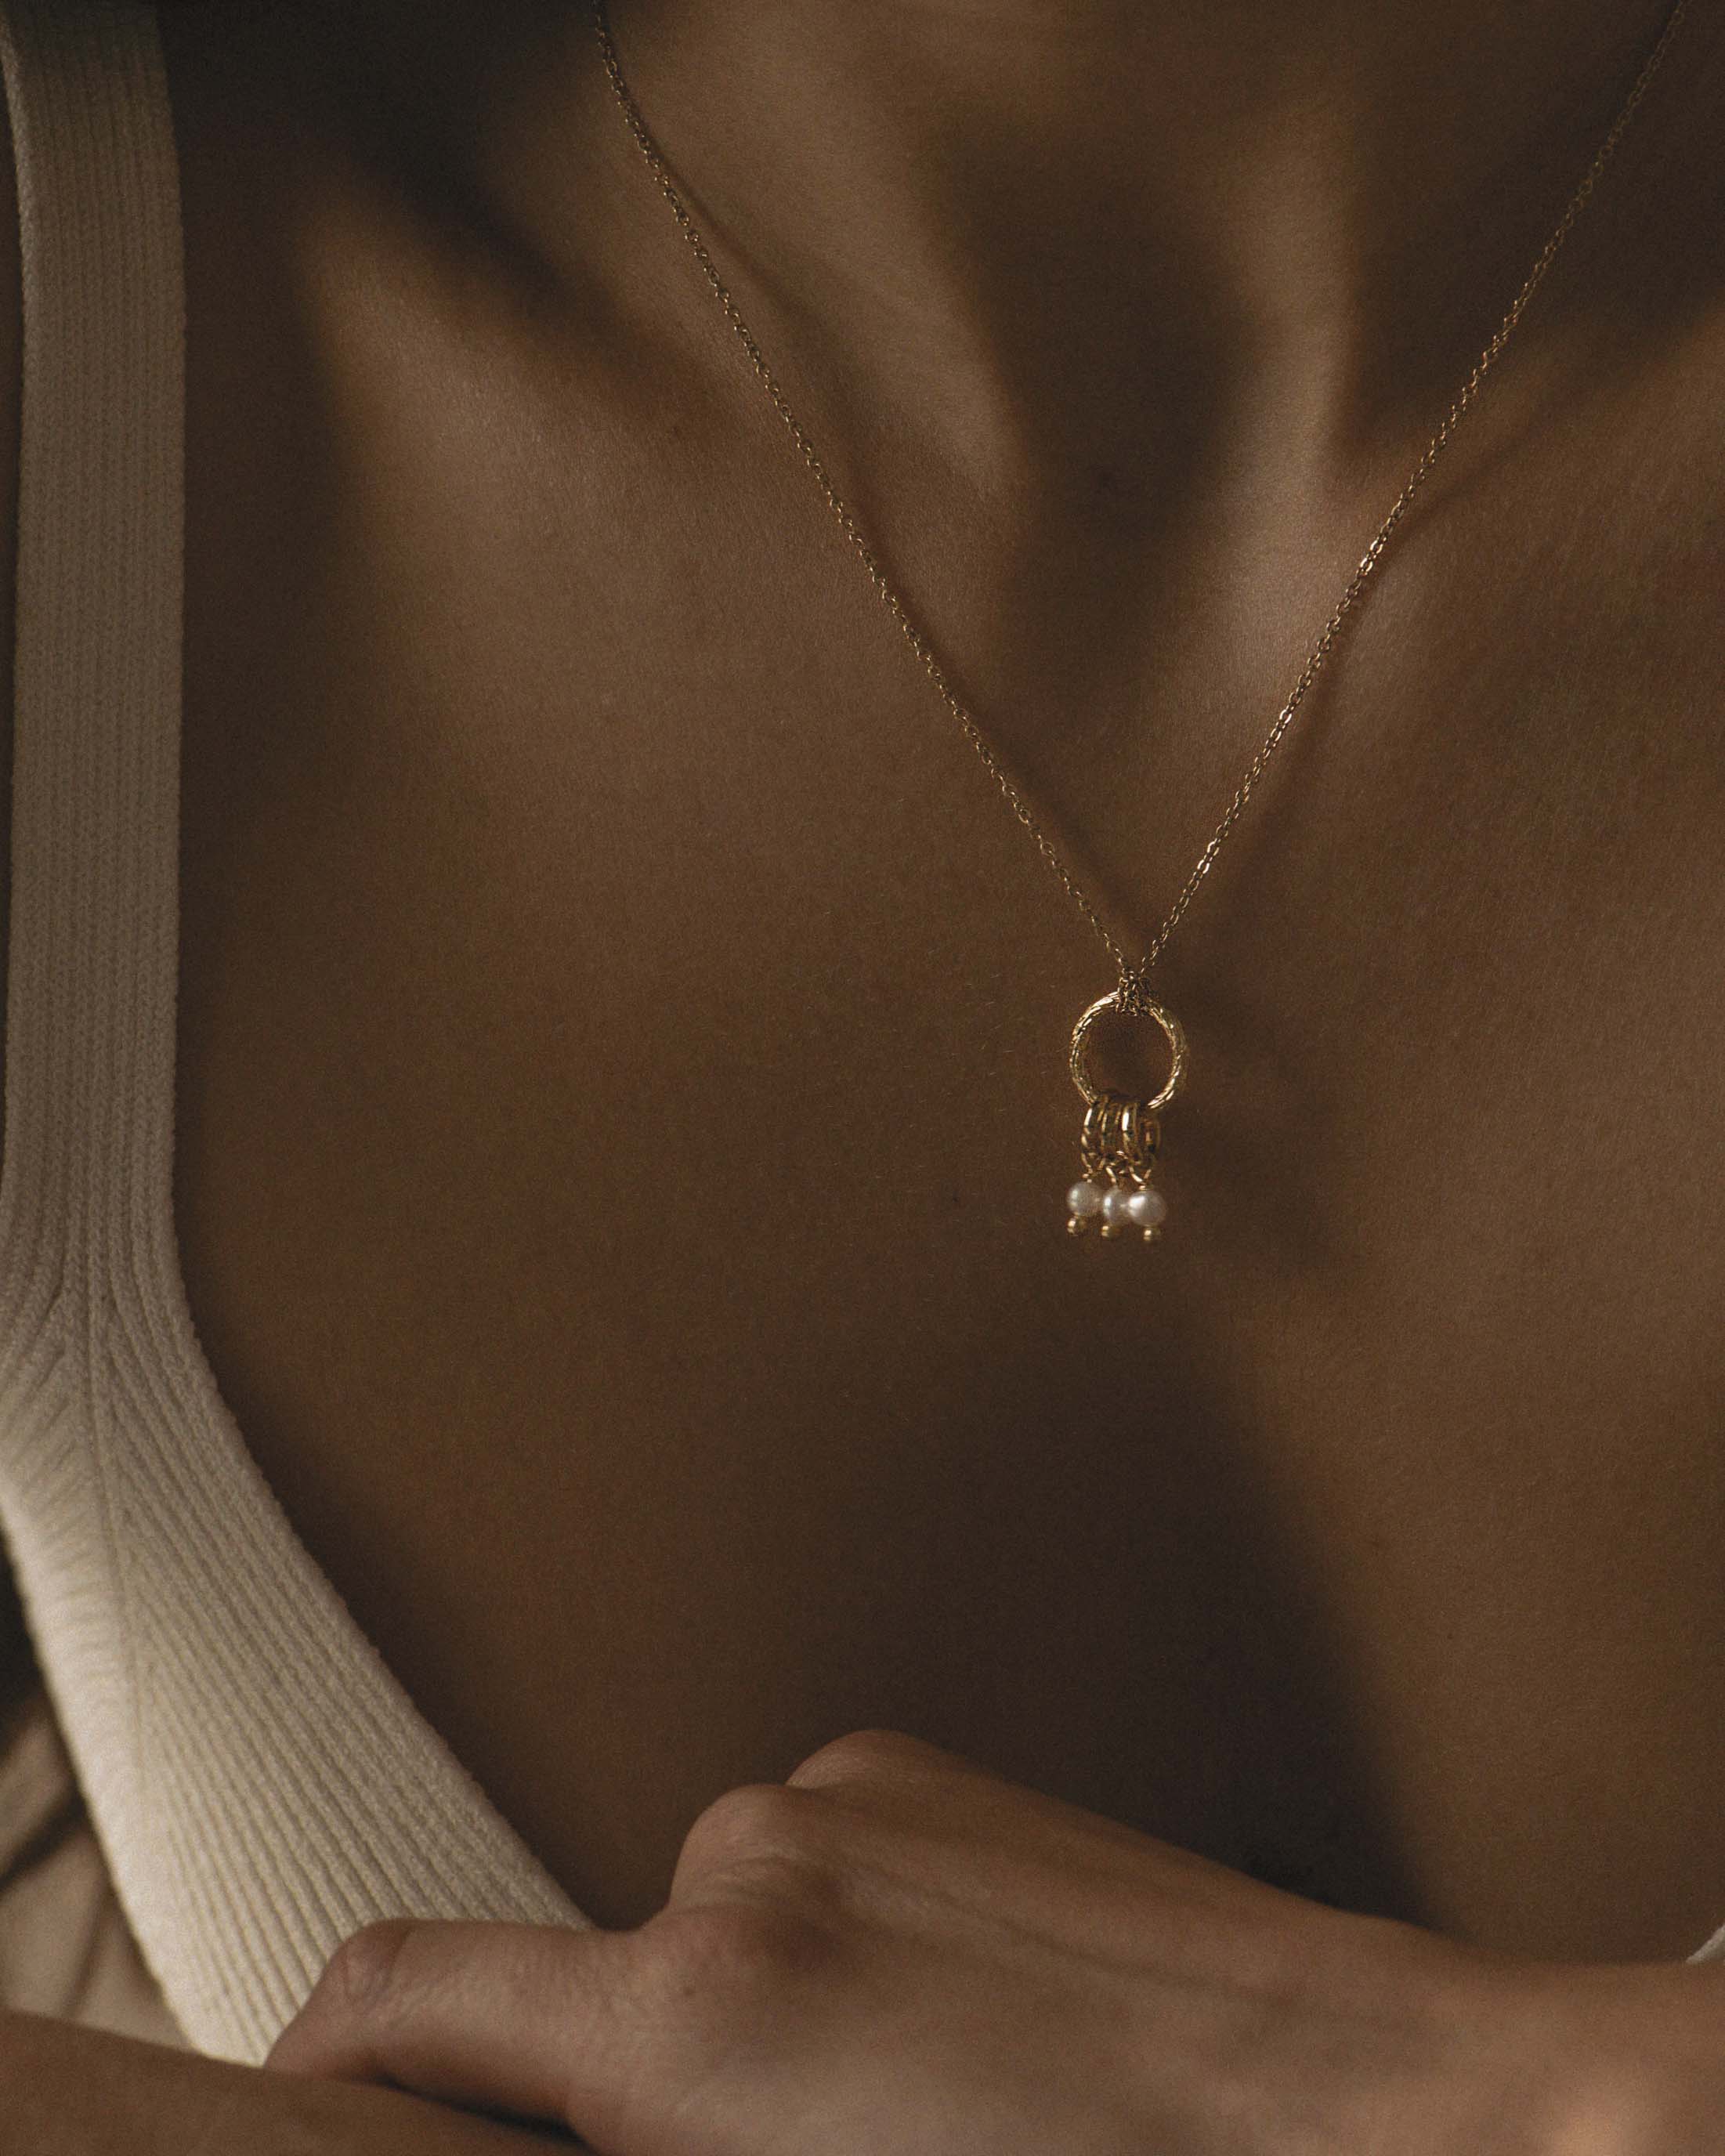 Collier composé d'un pendentif en anneau rayé avec trois anneaux pendants et trois perles de culture rondes en plaqué or 3 microns fabriqué en France. 